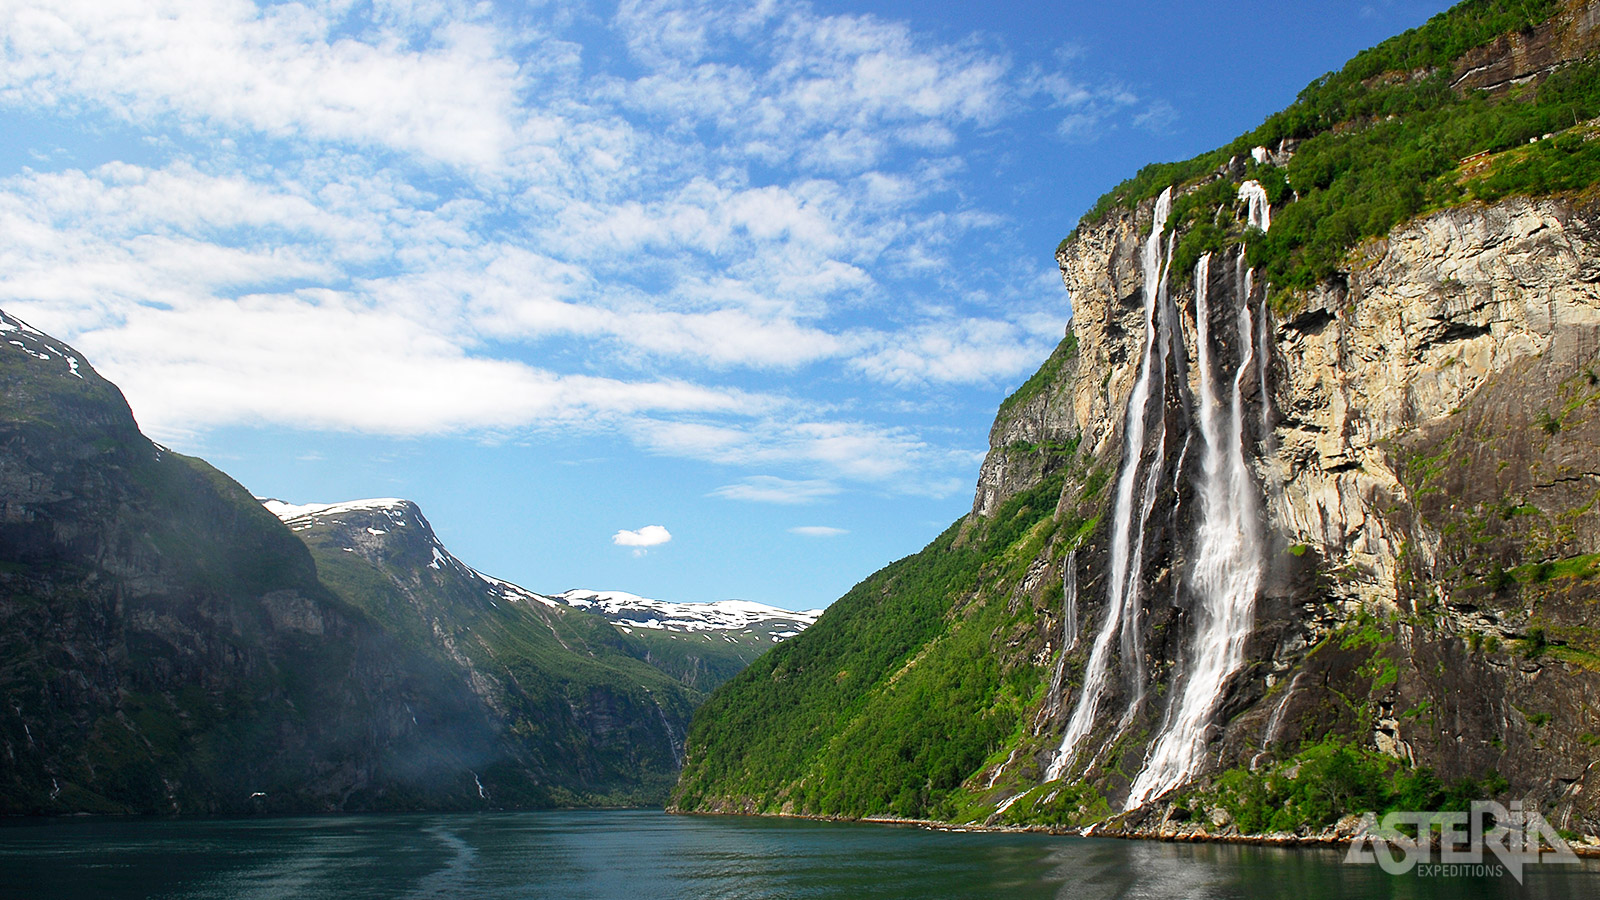 De Seven Sisters waterval is de beroemdste en meest gefotografeerde waterval in het Geirangerfjord